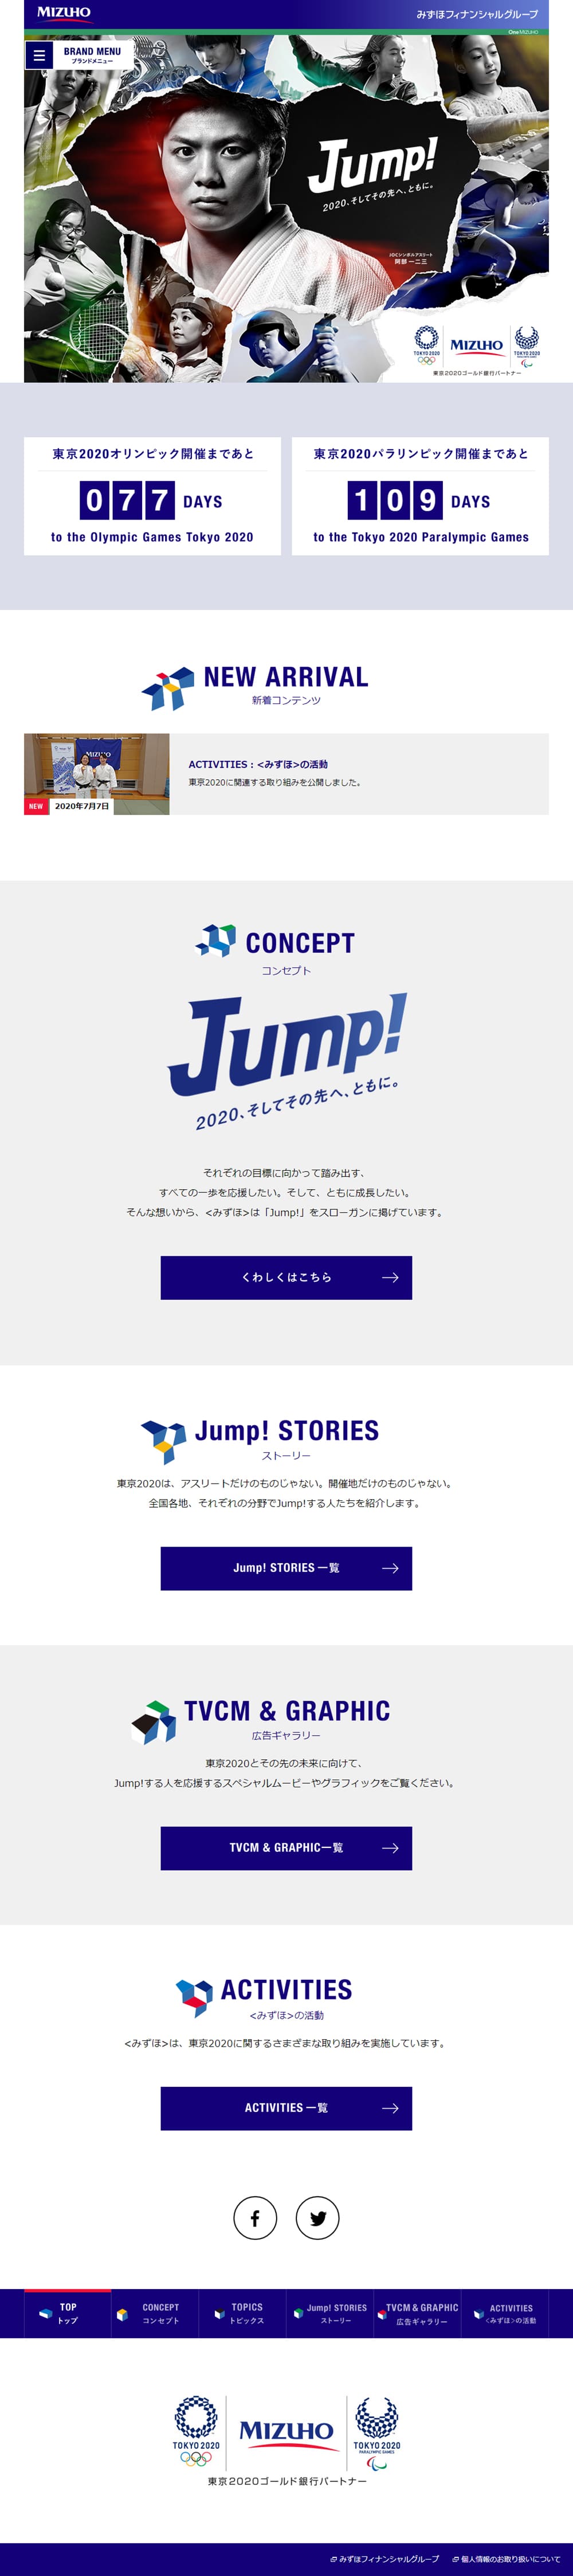 JUMP_pc_1